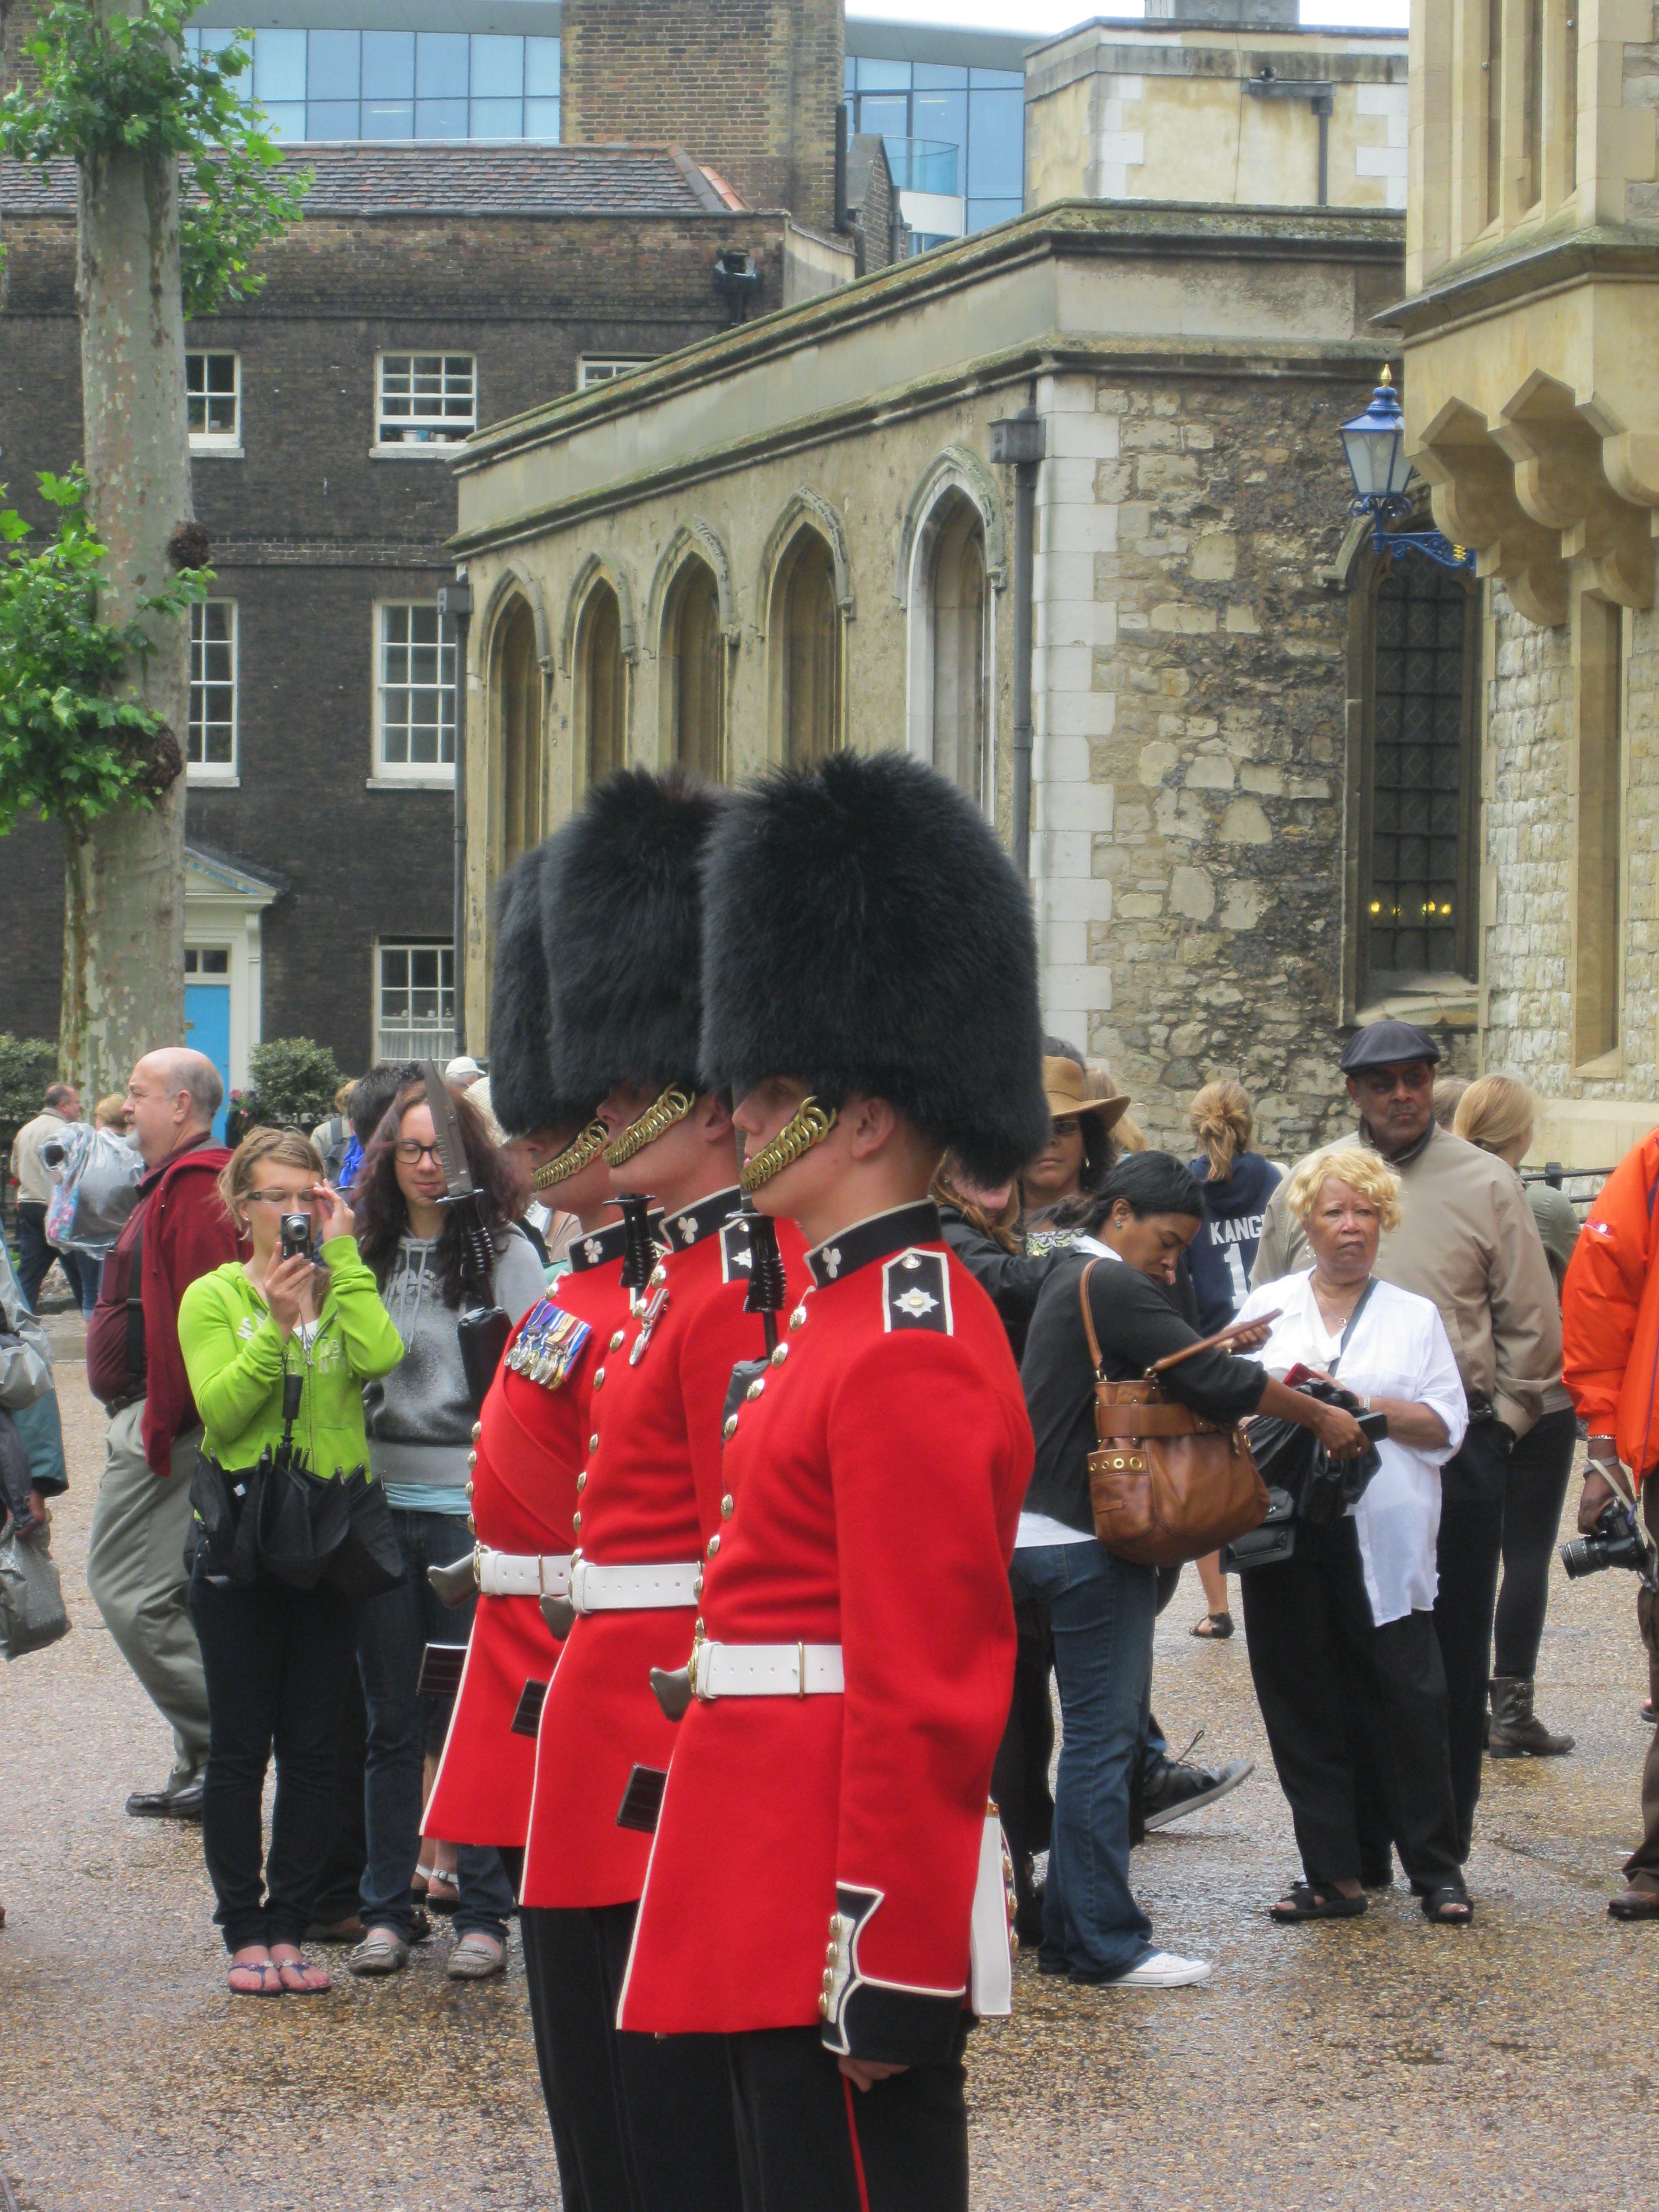 British royal guards